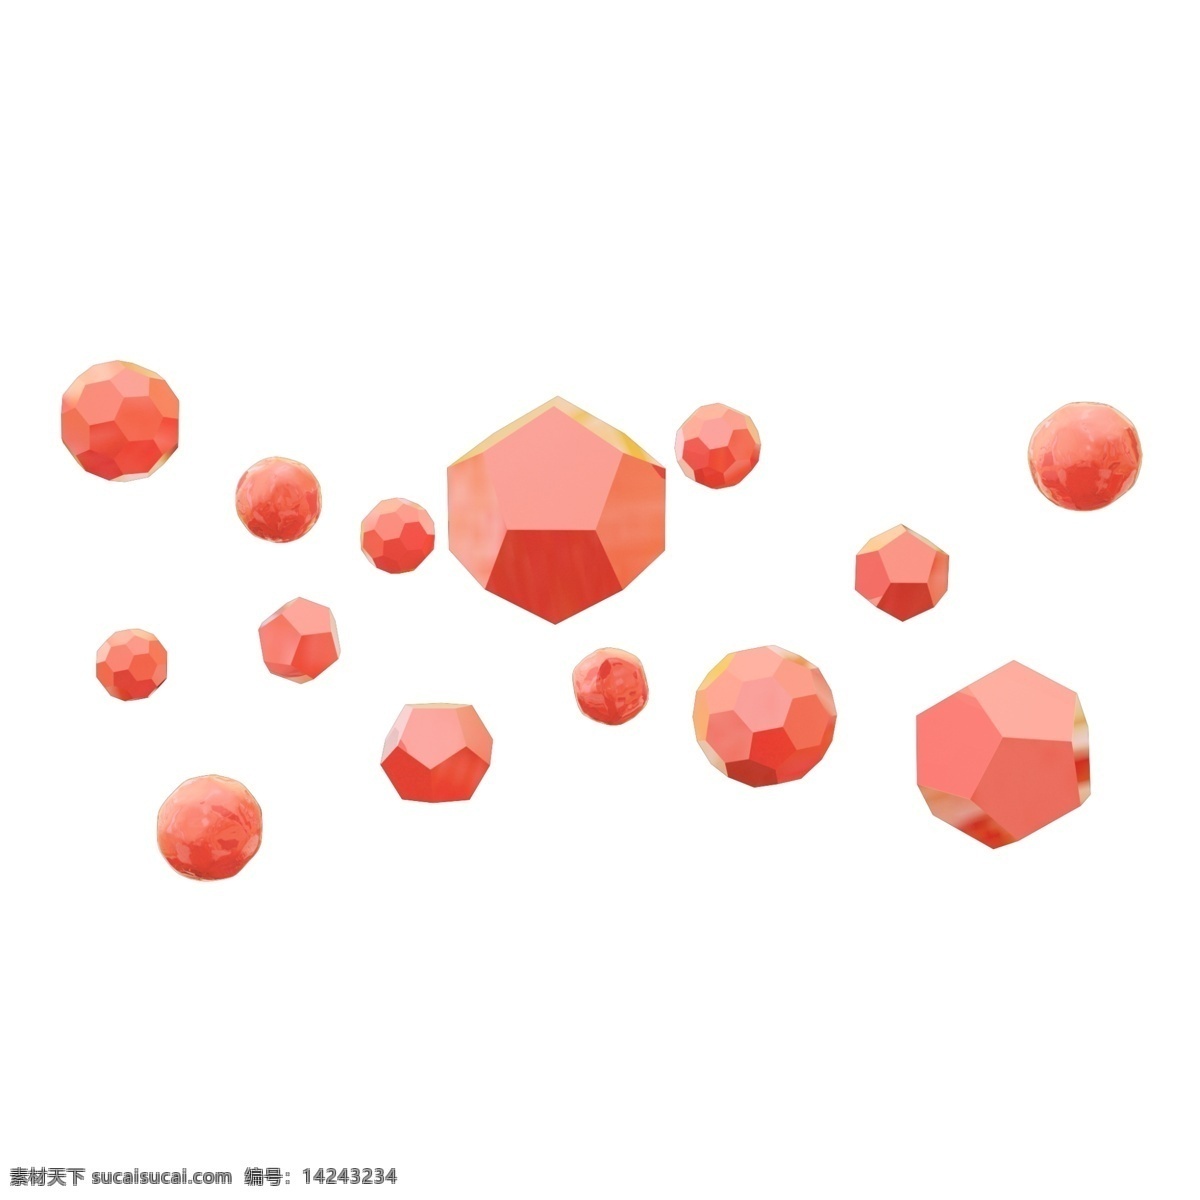 3d 粉色 多边形 悬浮 颗粒 卡通 立体 c4d 电商 球形 悬浮颗粒 漂浮 漂浮多边形 粉色球形 粉色多边形